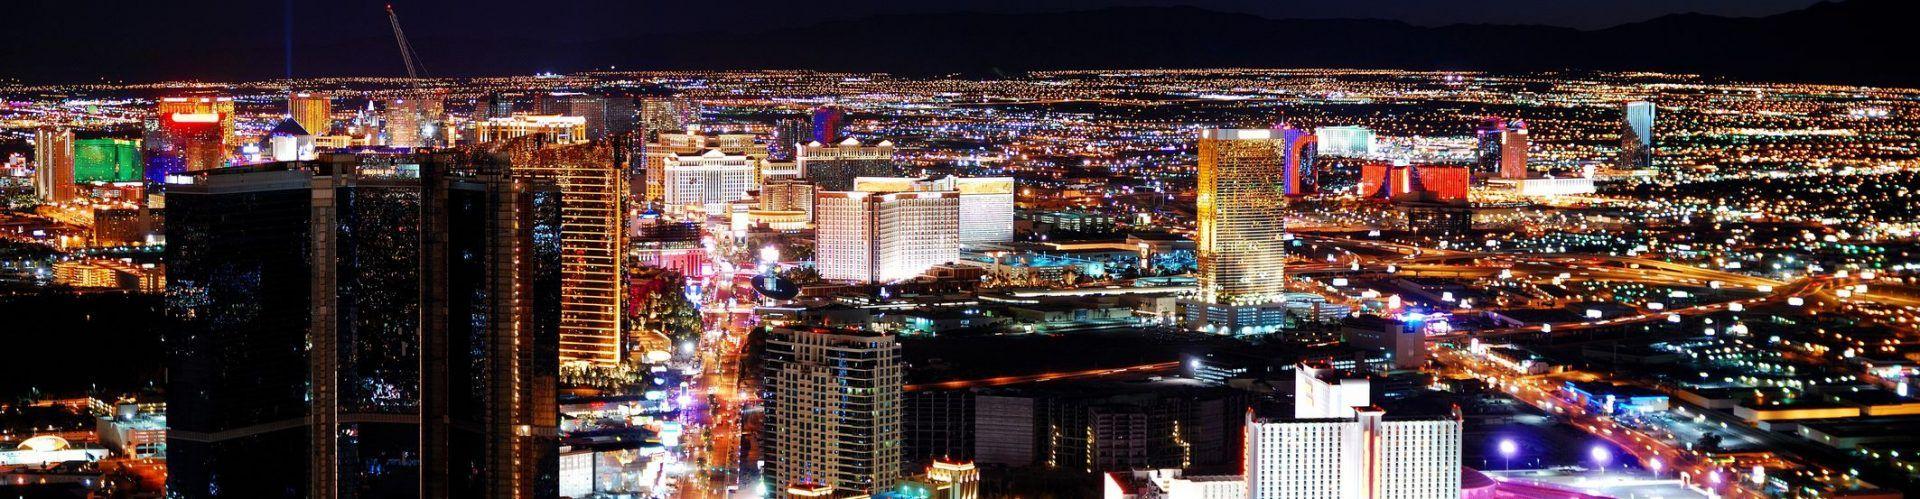 Las Vegas Events Calendar | 2021 - 2022 | Las Vegas Shows